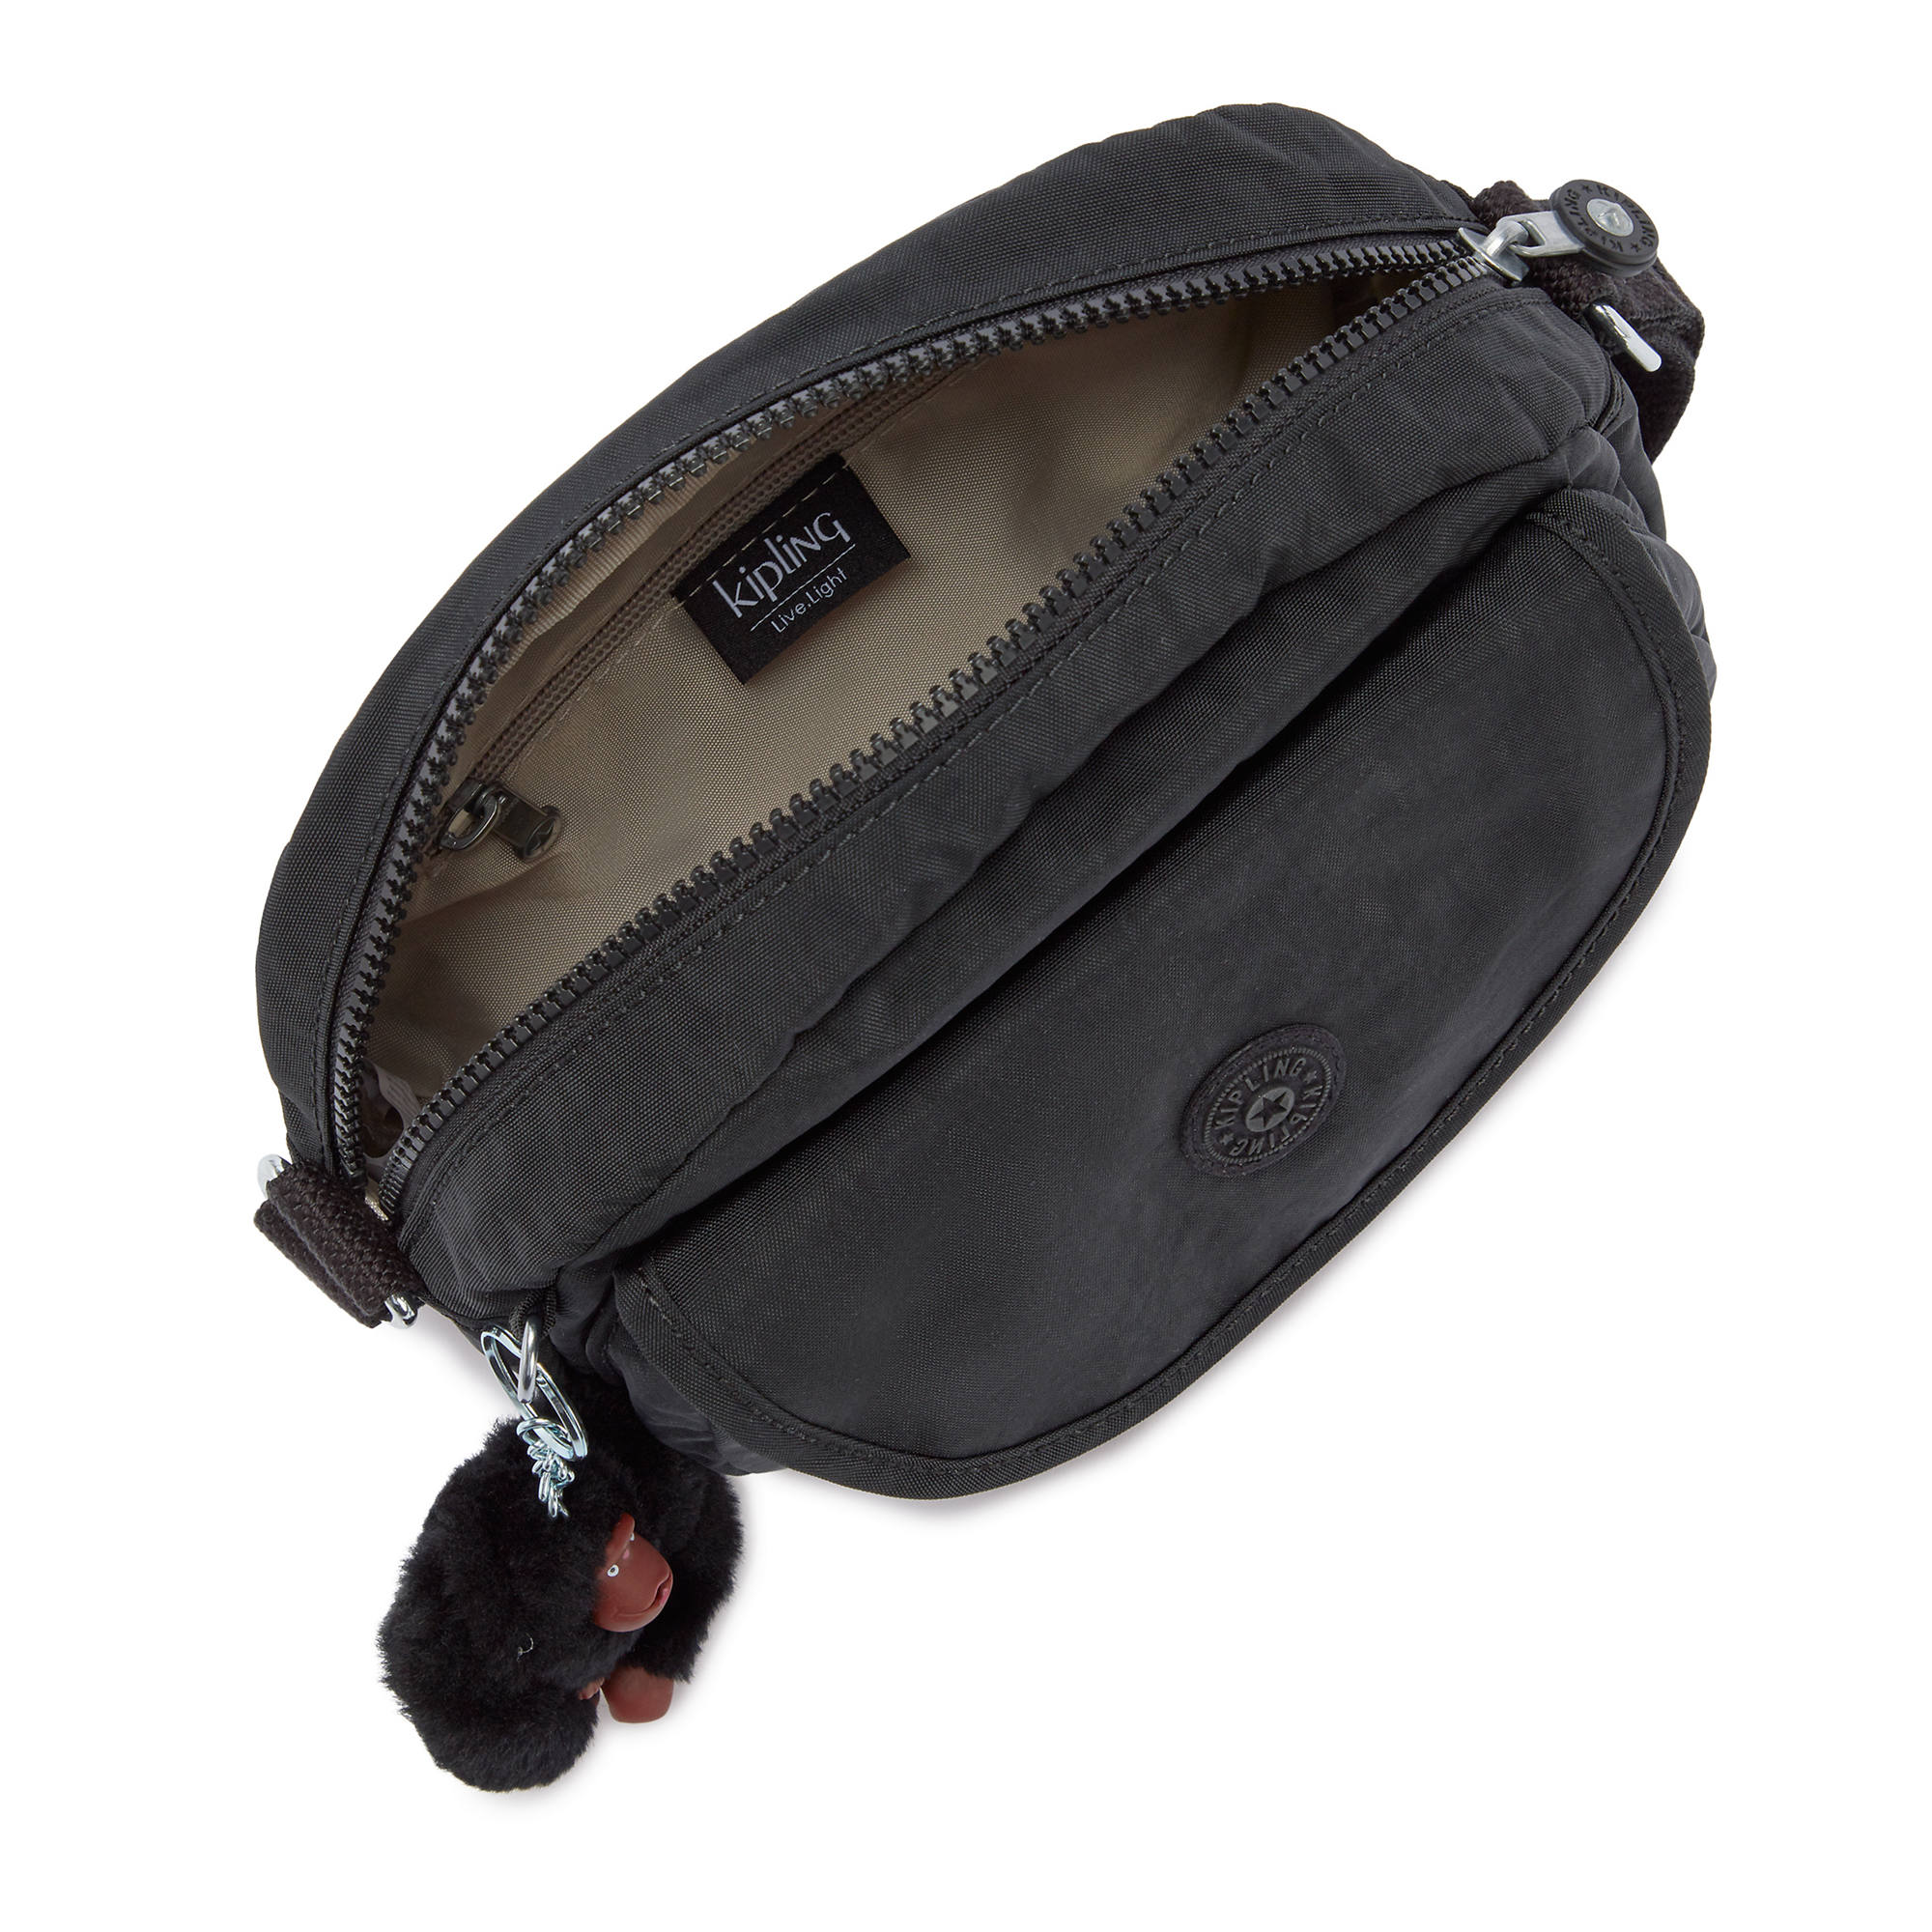 Kipling Women's Stelma Crossbody Handbag with Adjustable Strap | eBay